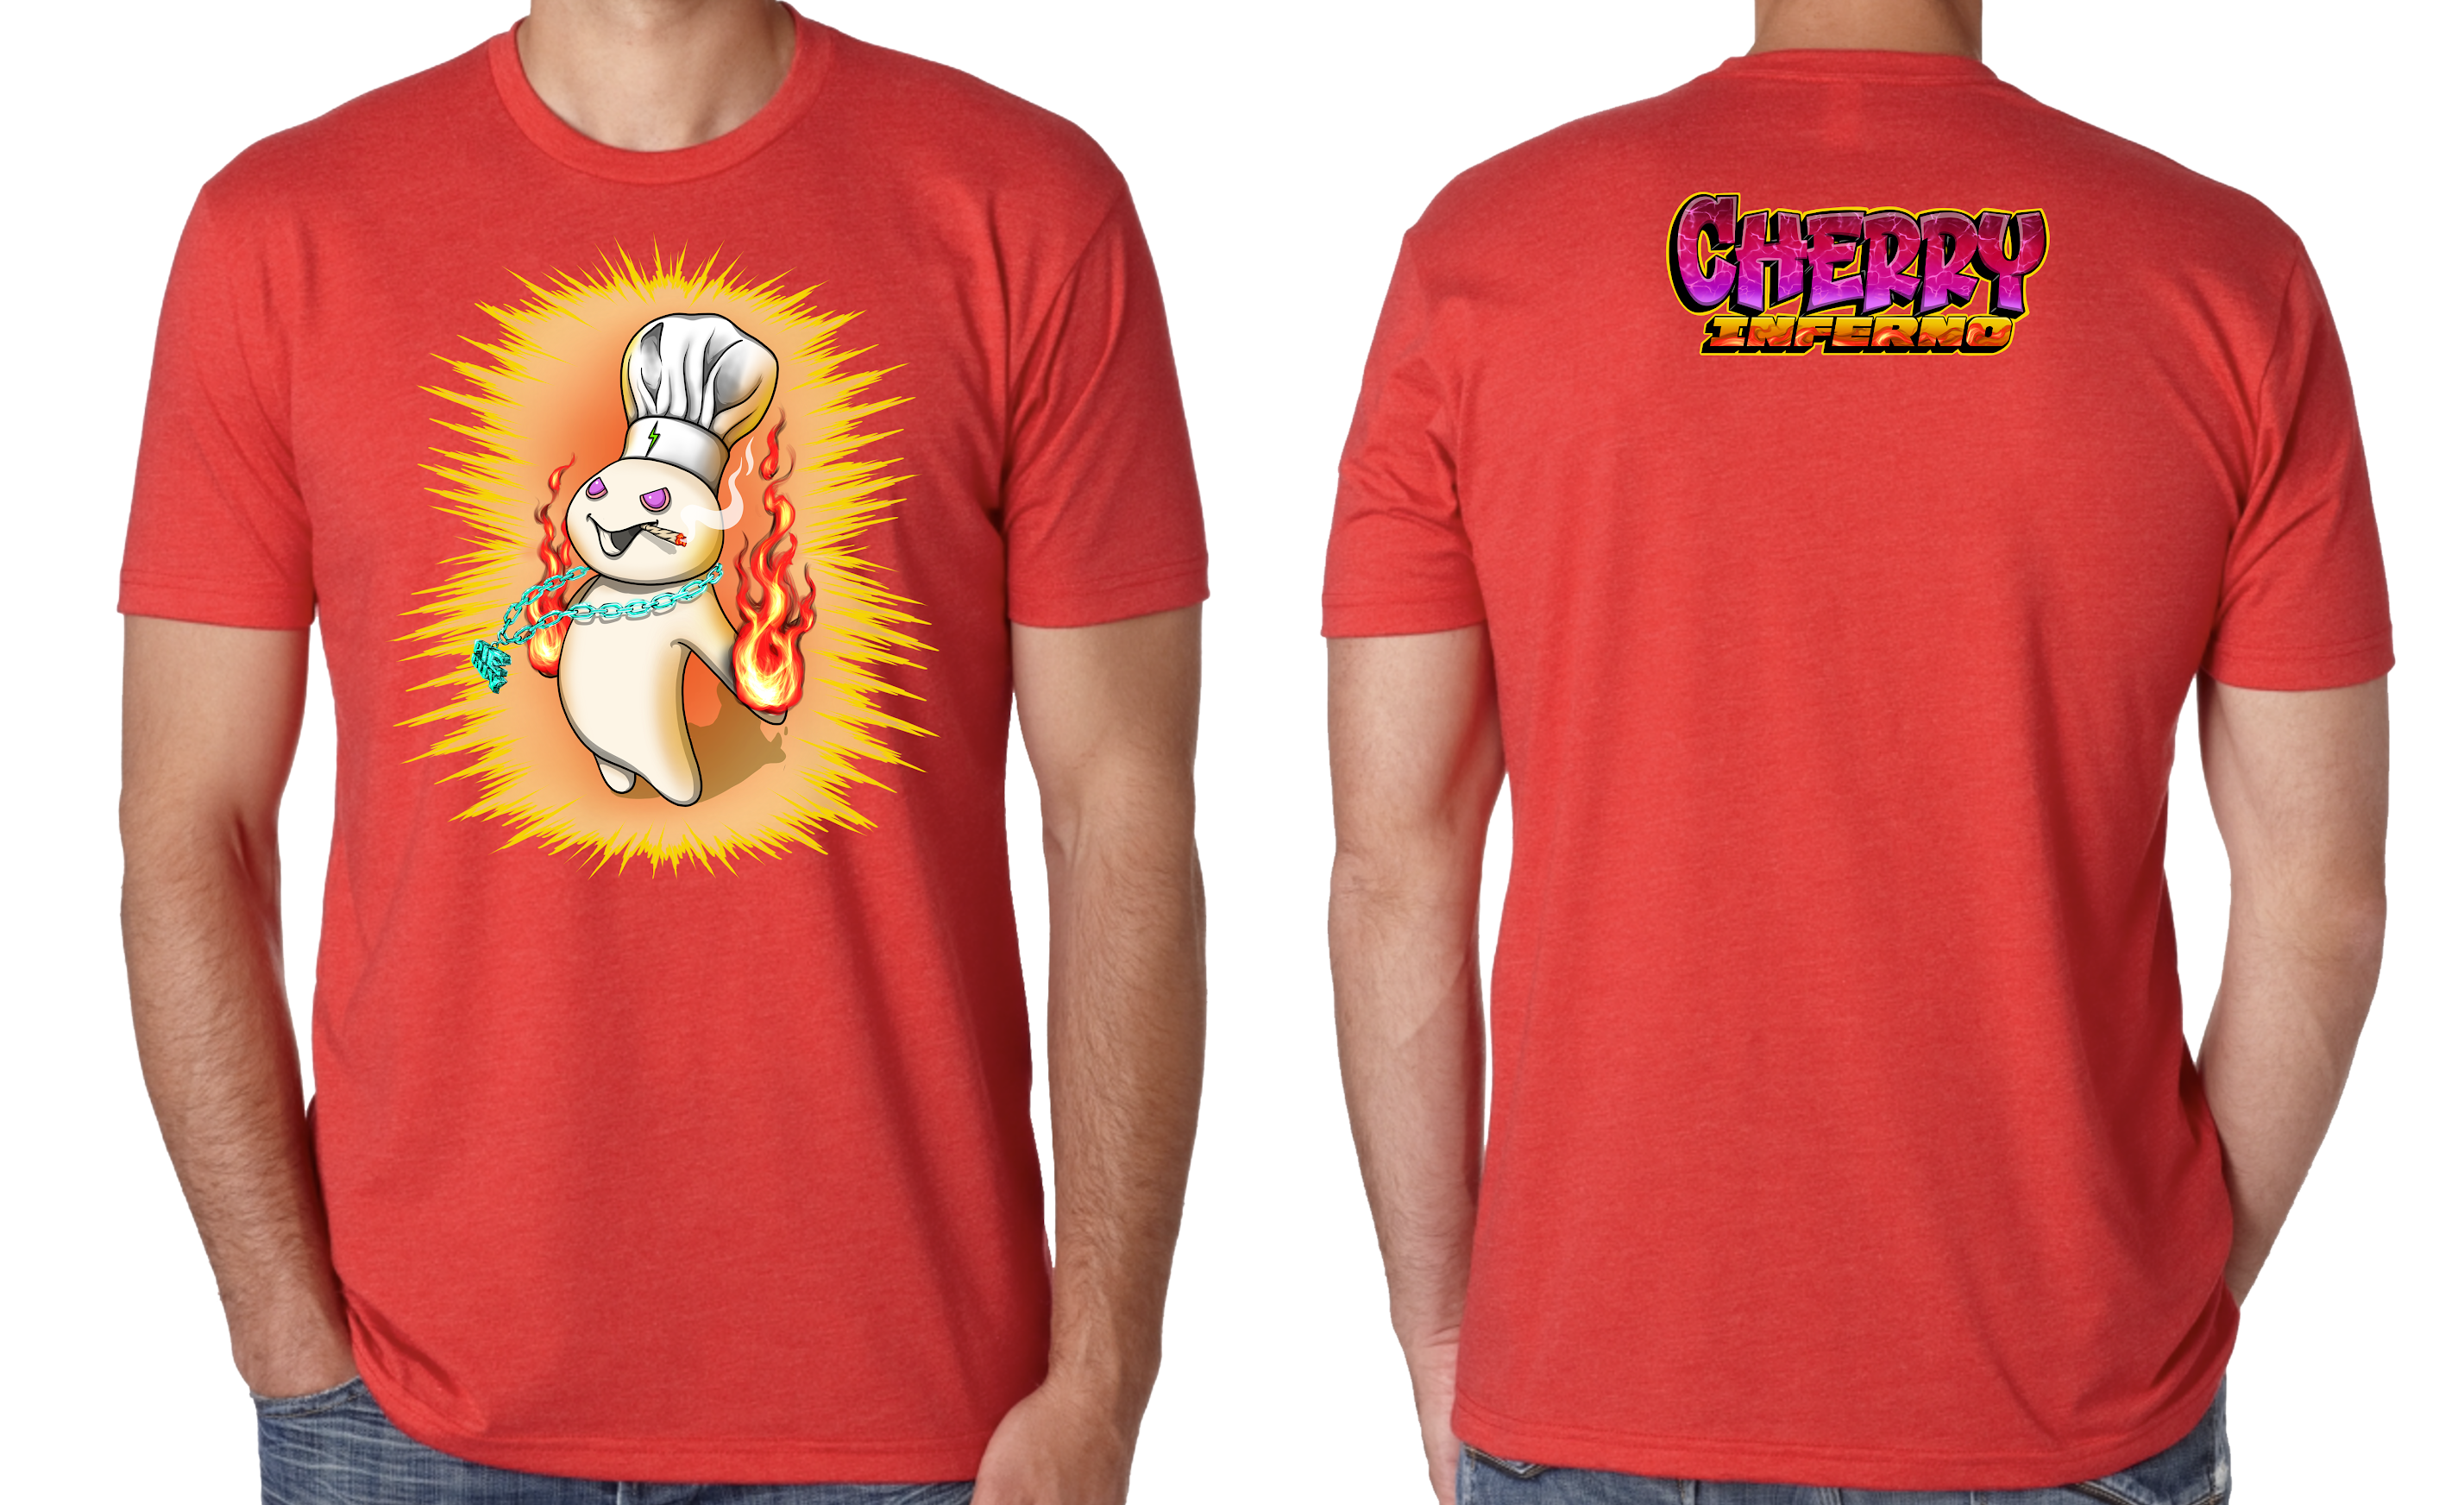 Cherry Inferno Shirt